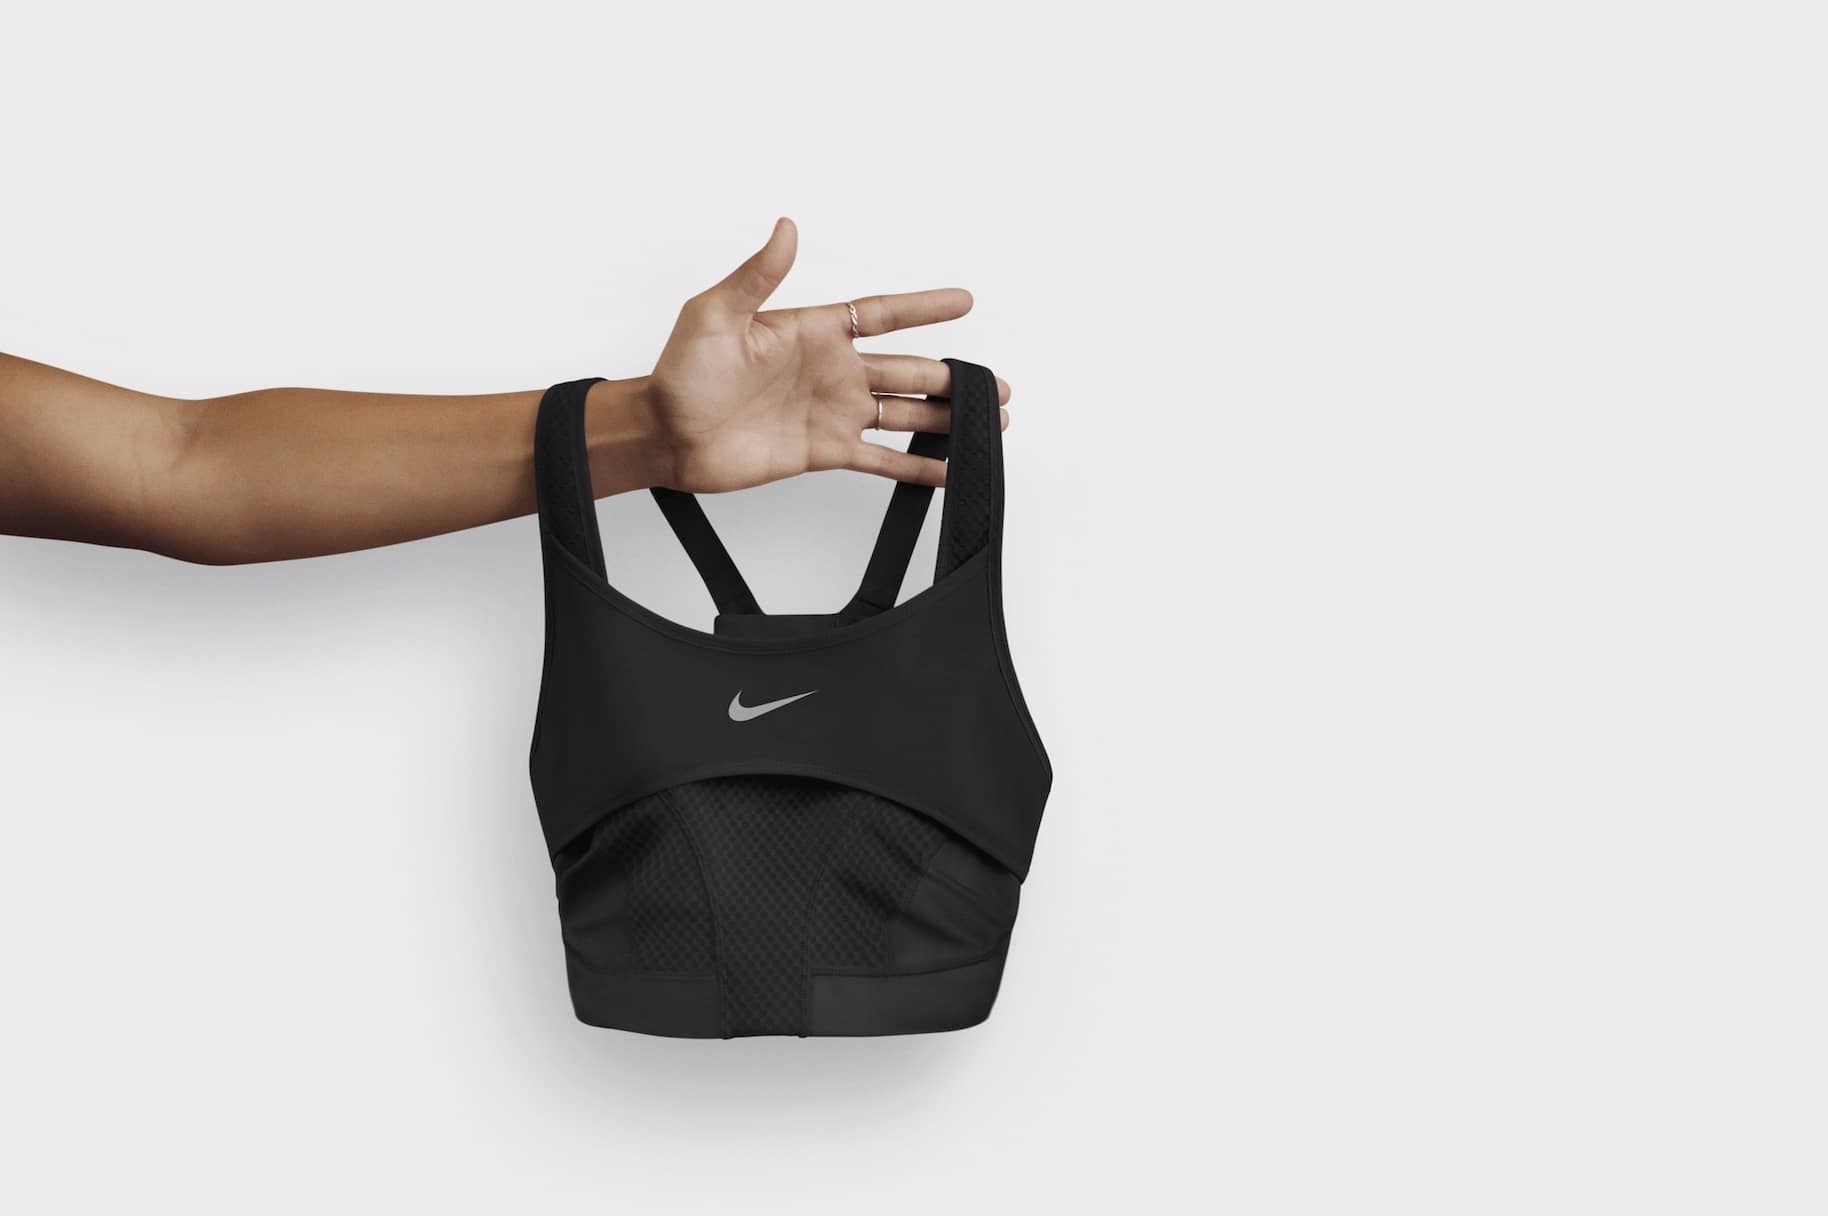 Nike sportband - Nehmen Sie unserem Testsieger